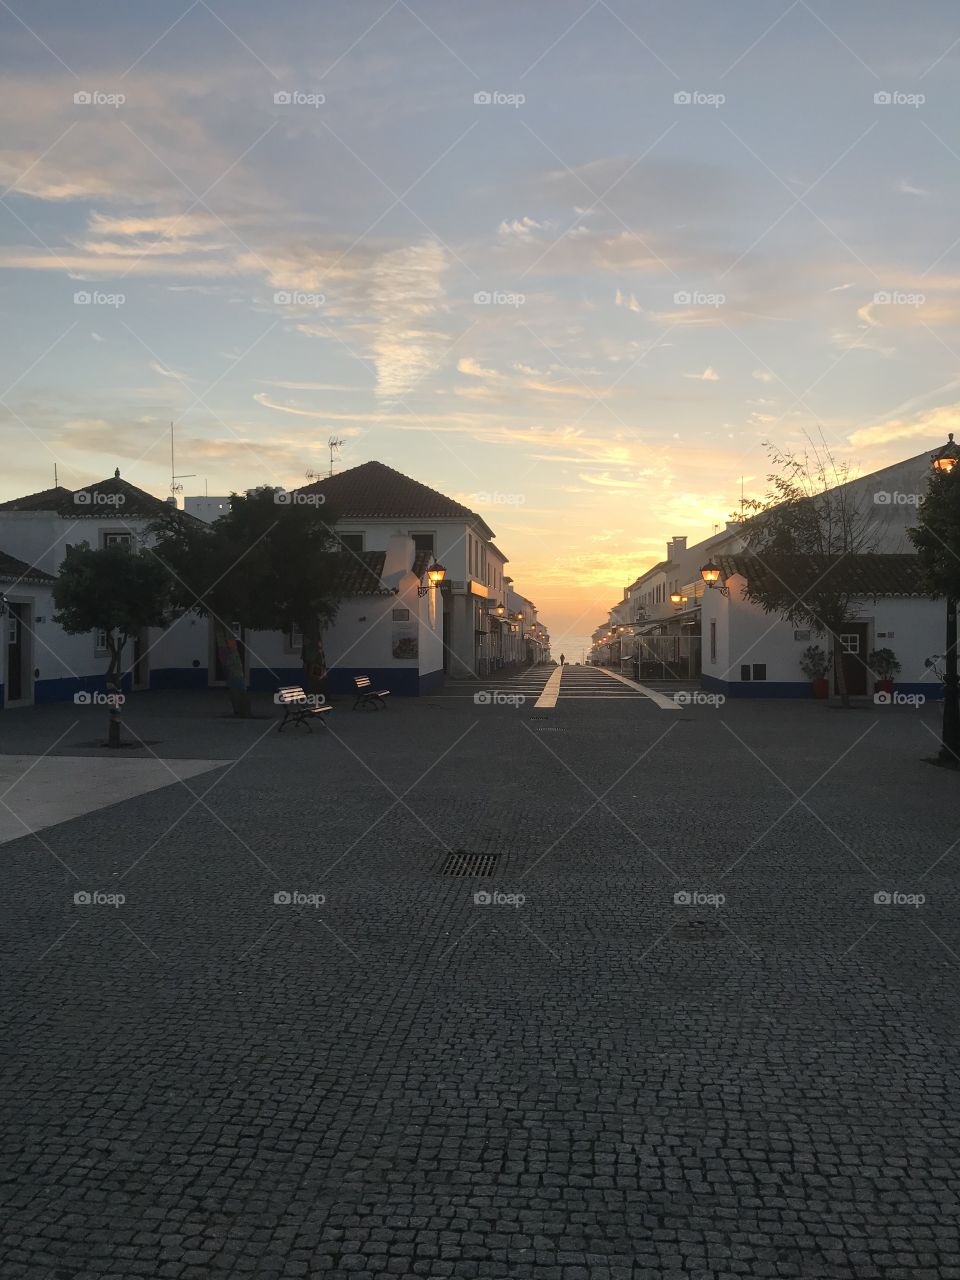 Porto Covo, Portugal 🇵🇹